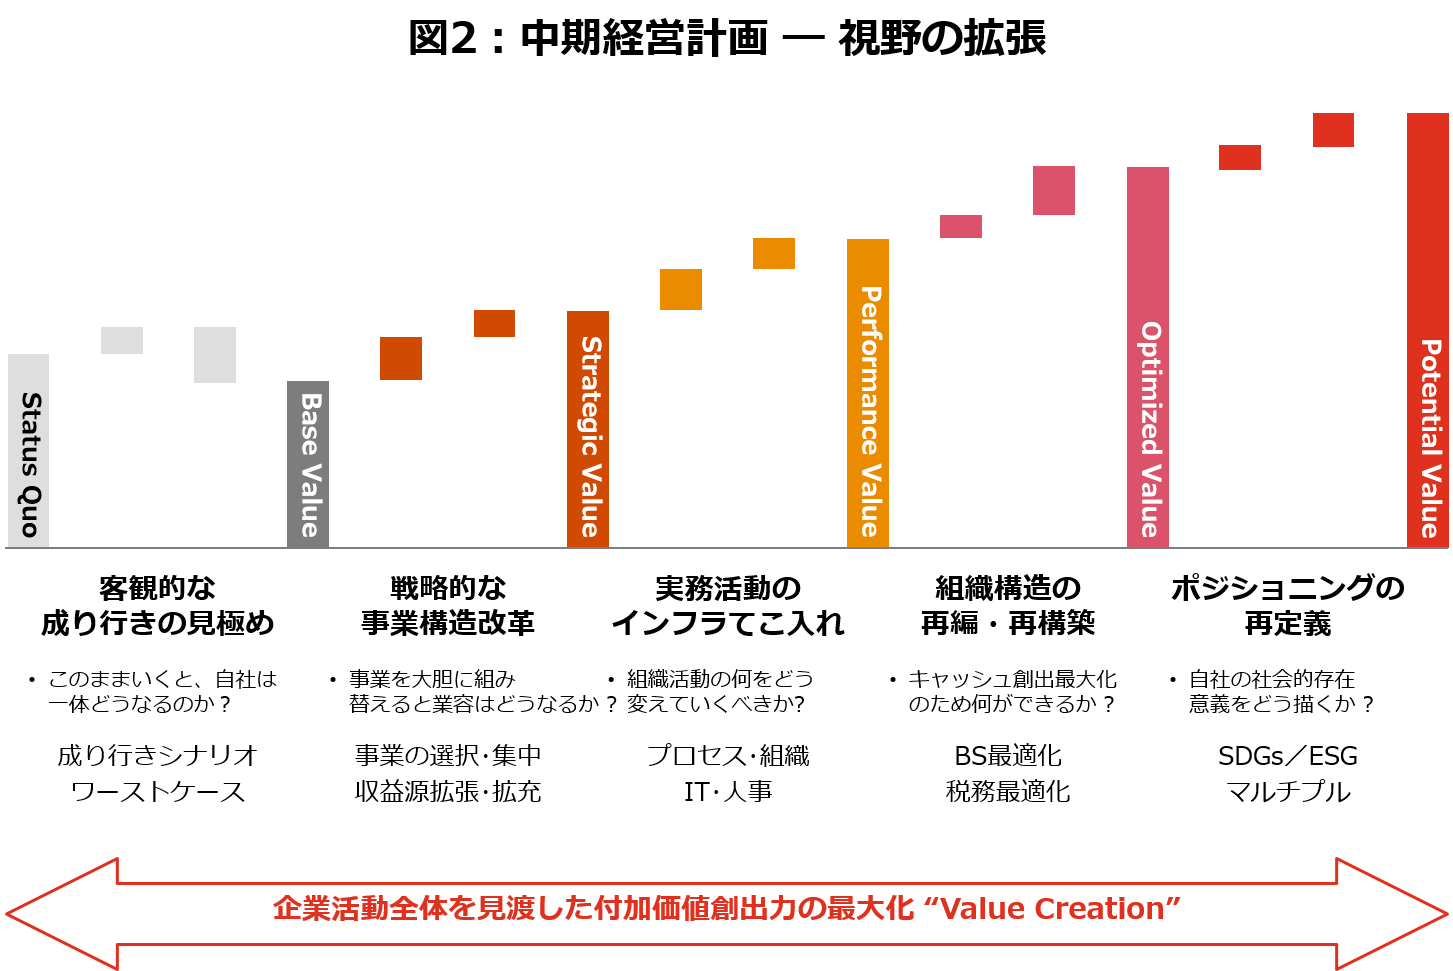 企業価値向上のための経営戦略 Pwc Japanグループ